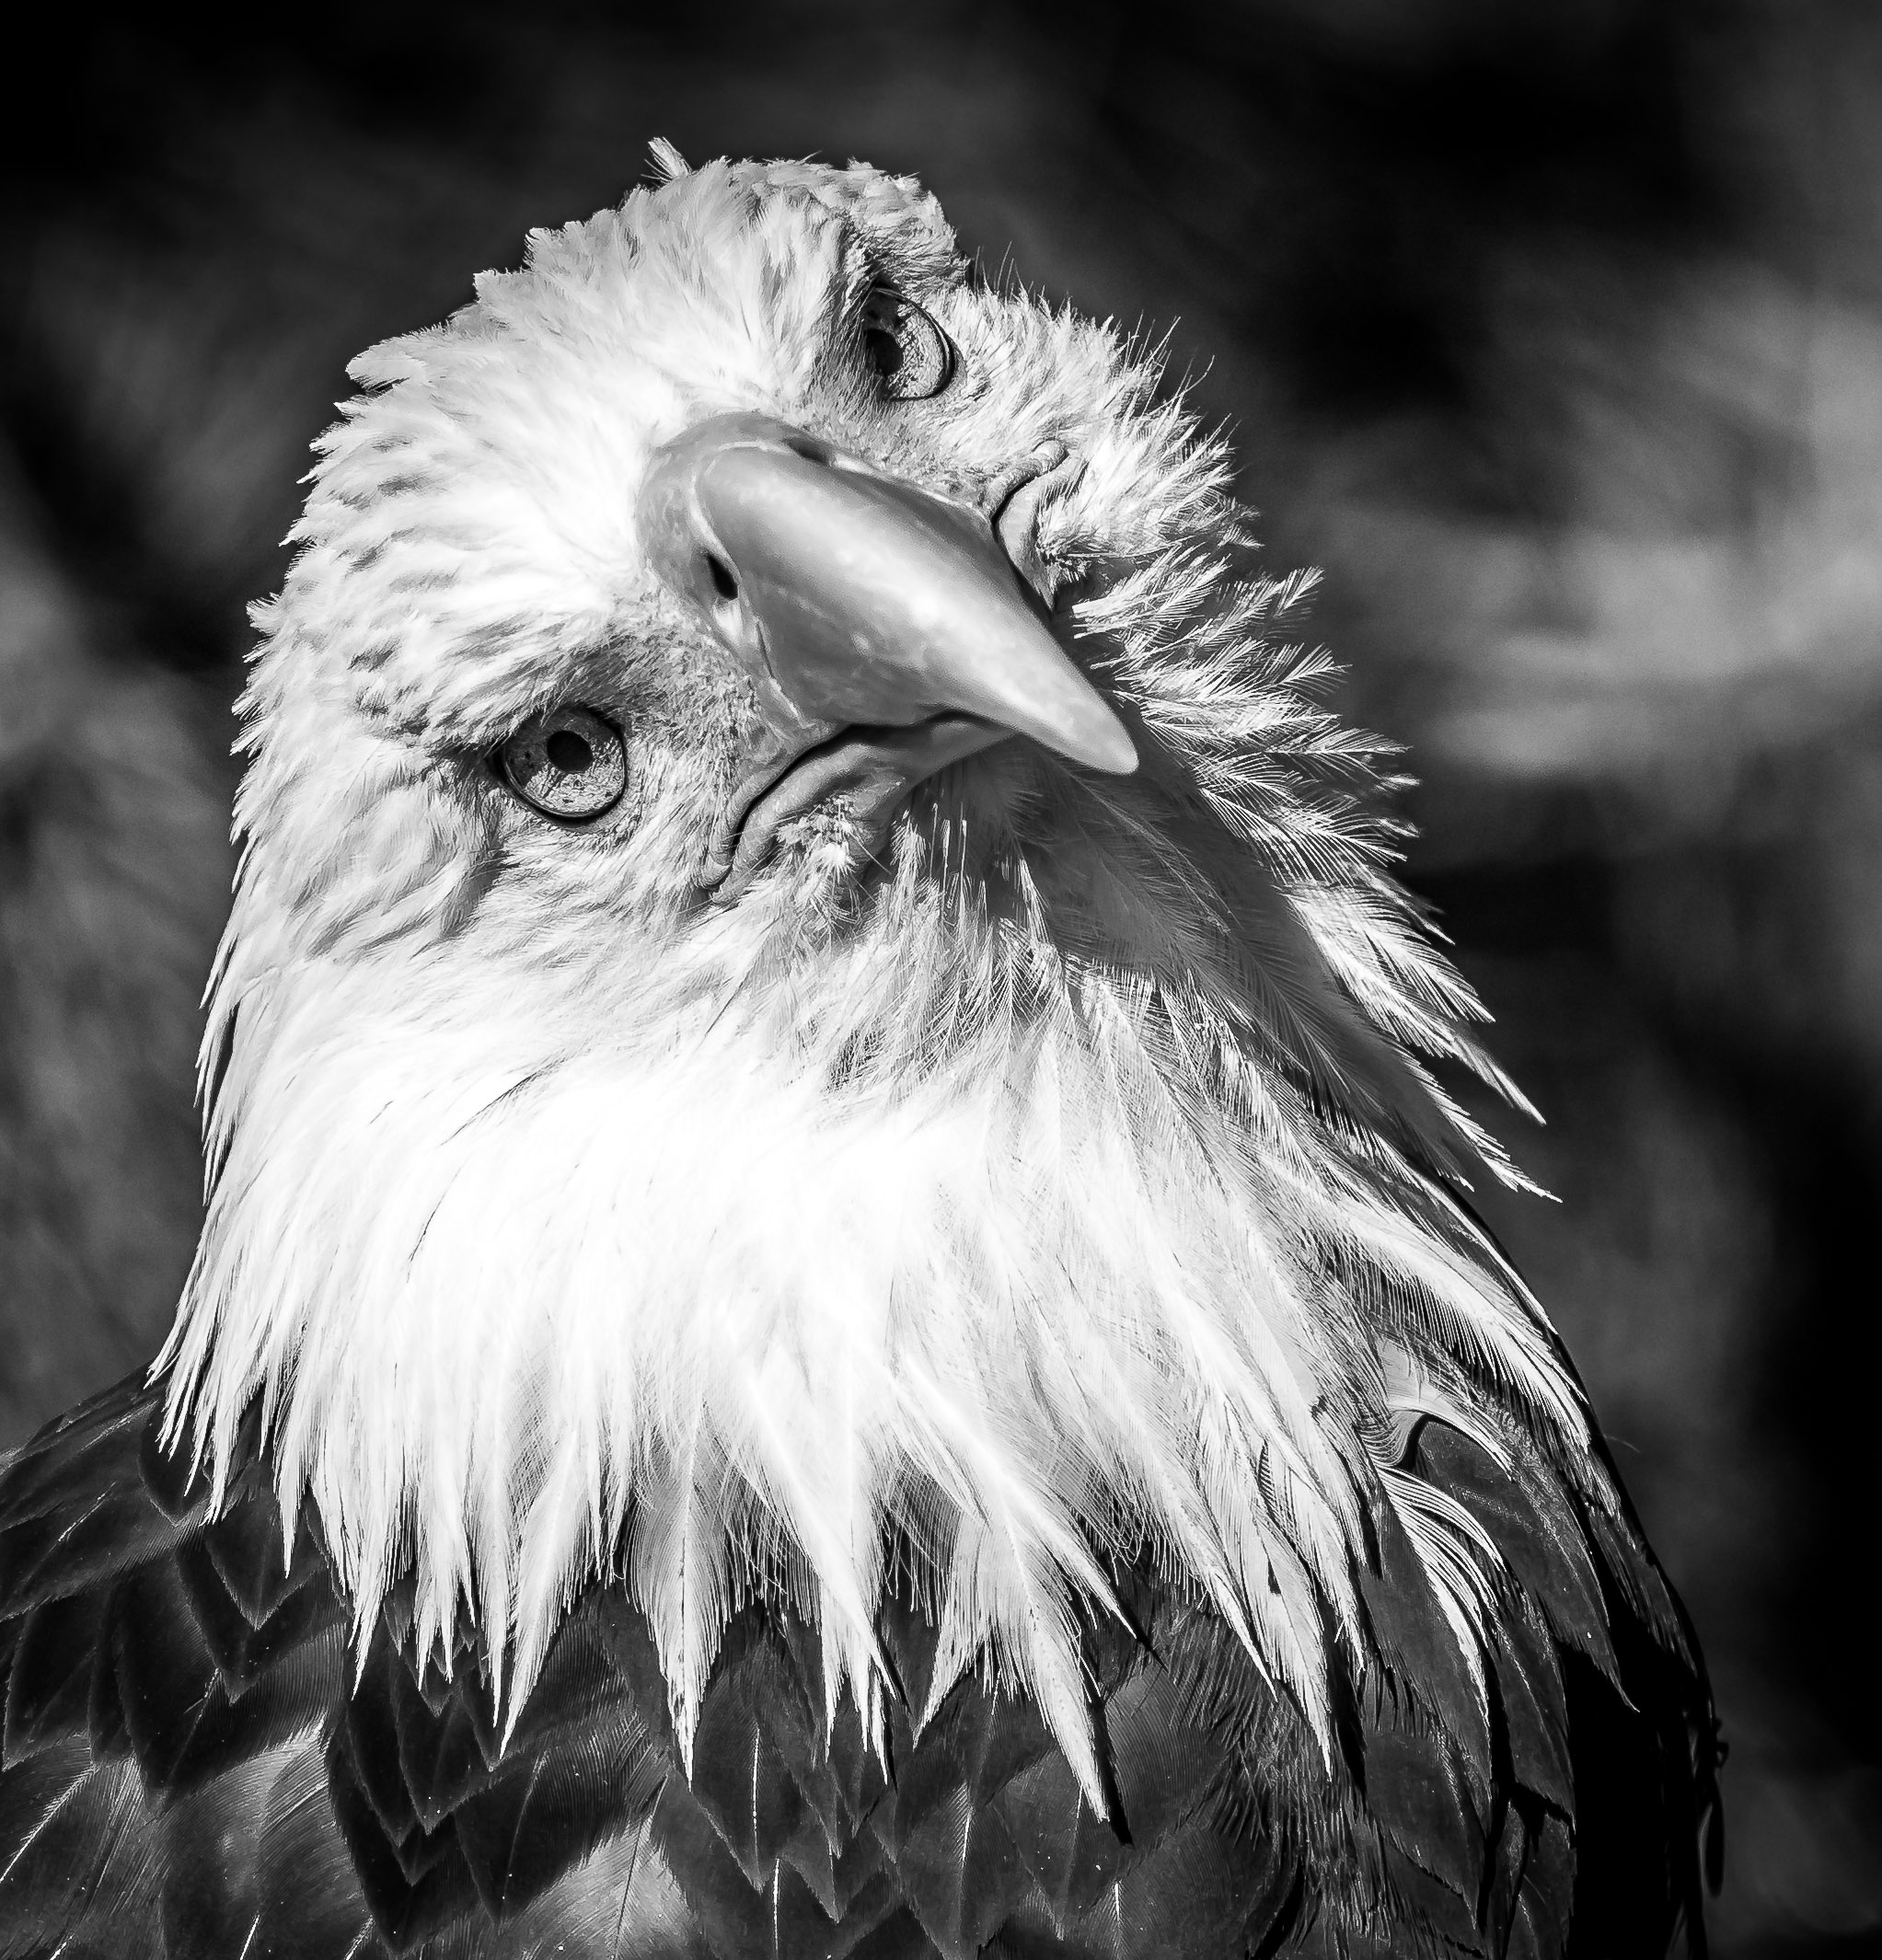 Bald eagle looking straight at camera